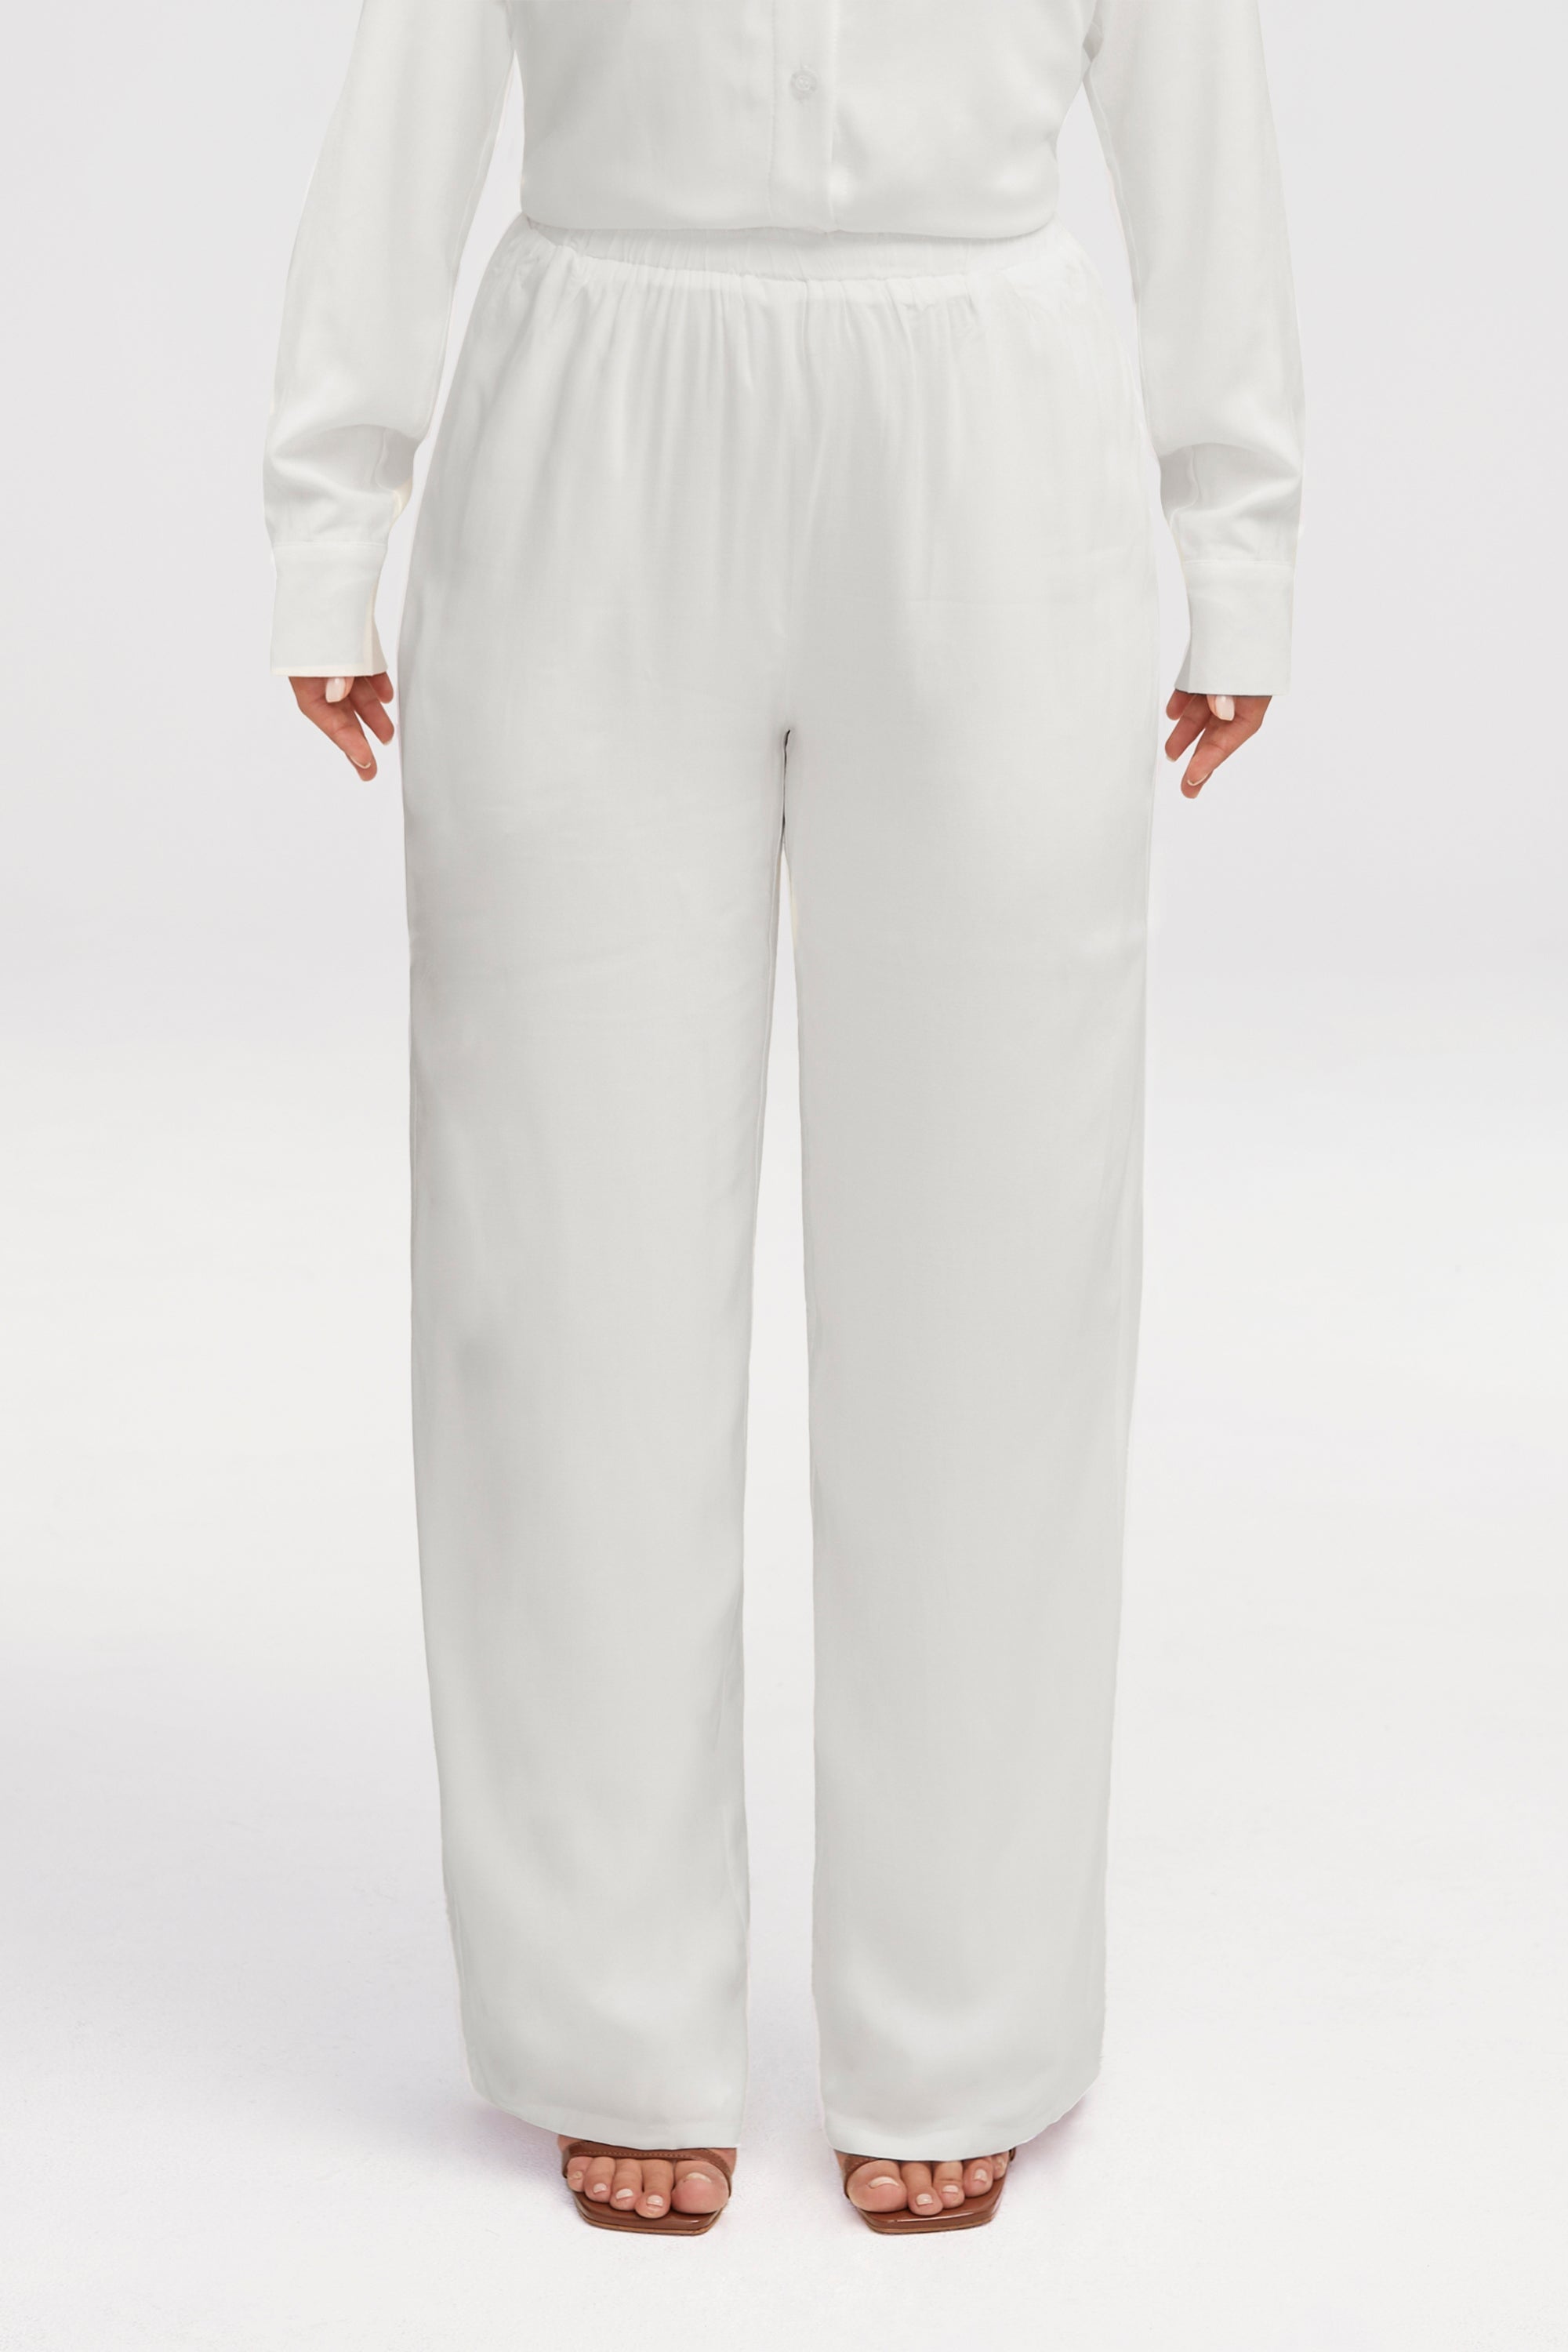 Alina Wide Leg Pants - White Clothing epschoolboard 